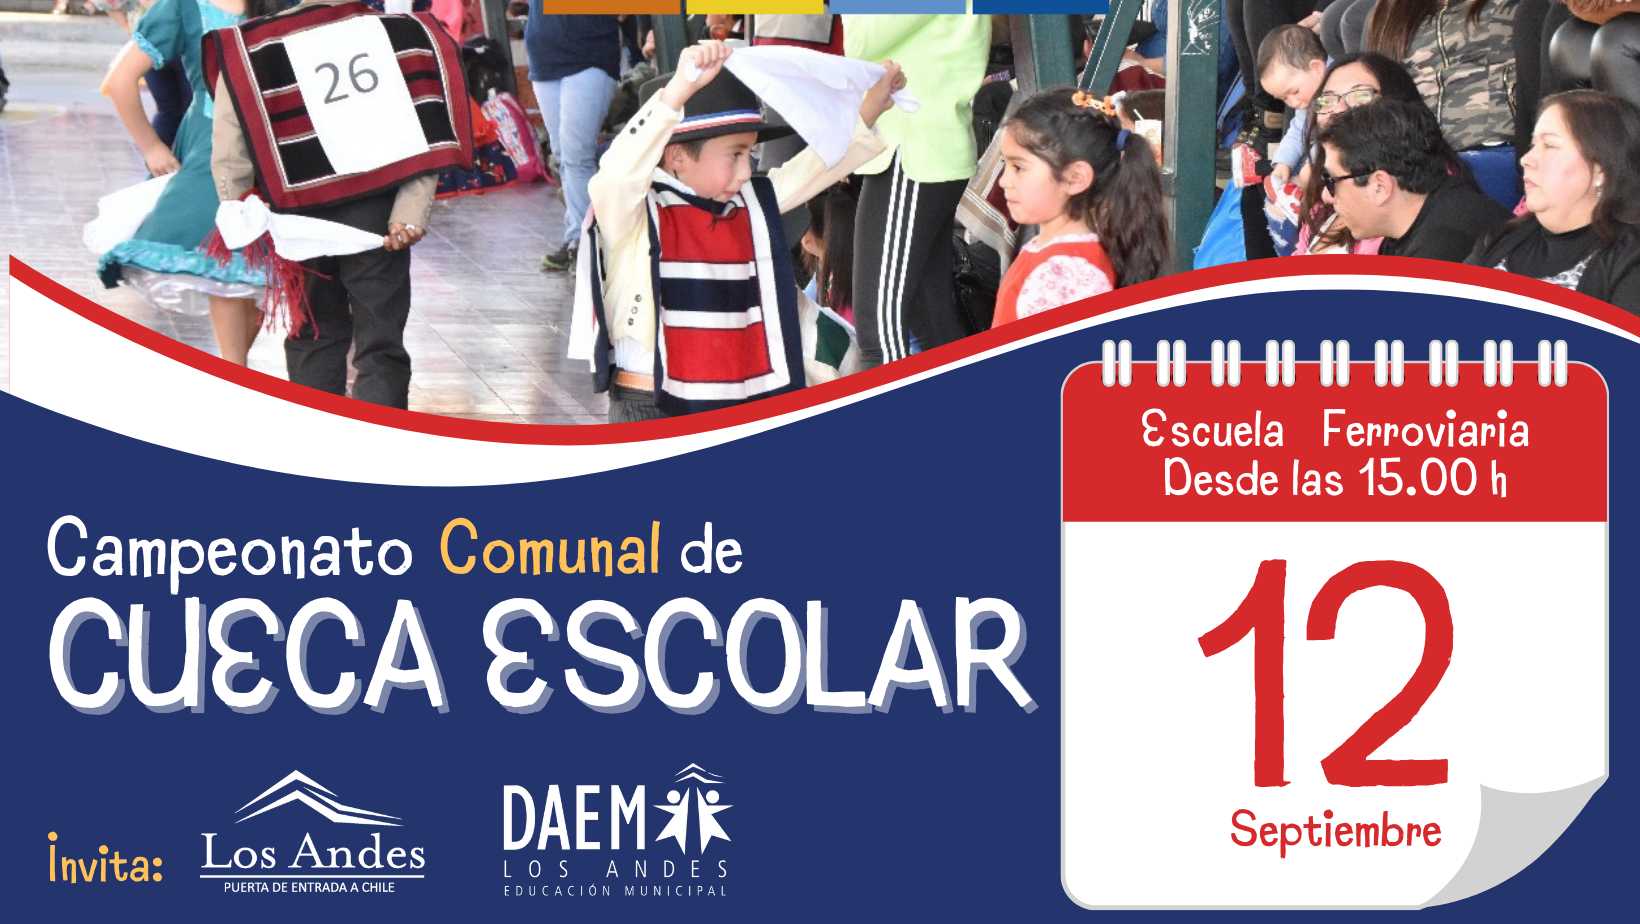 LOS ANDES: Educación Municipal de Los Andes Celebra el Mes de las Fiestas Patrias con Campeonato de Cueca y Galas Folclóricas